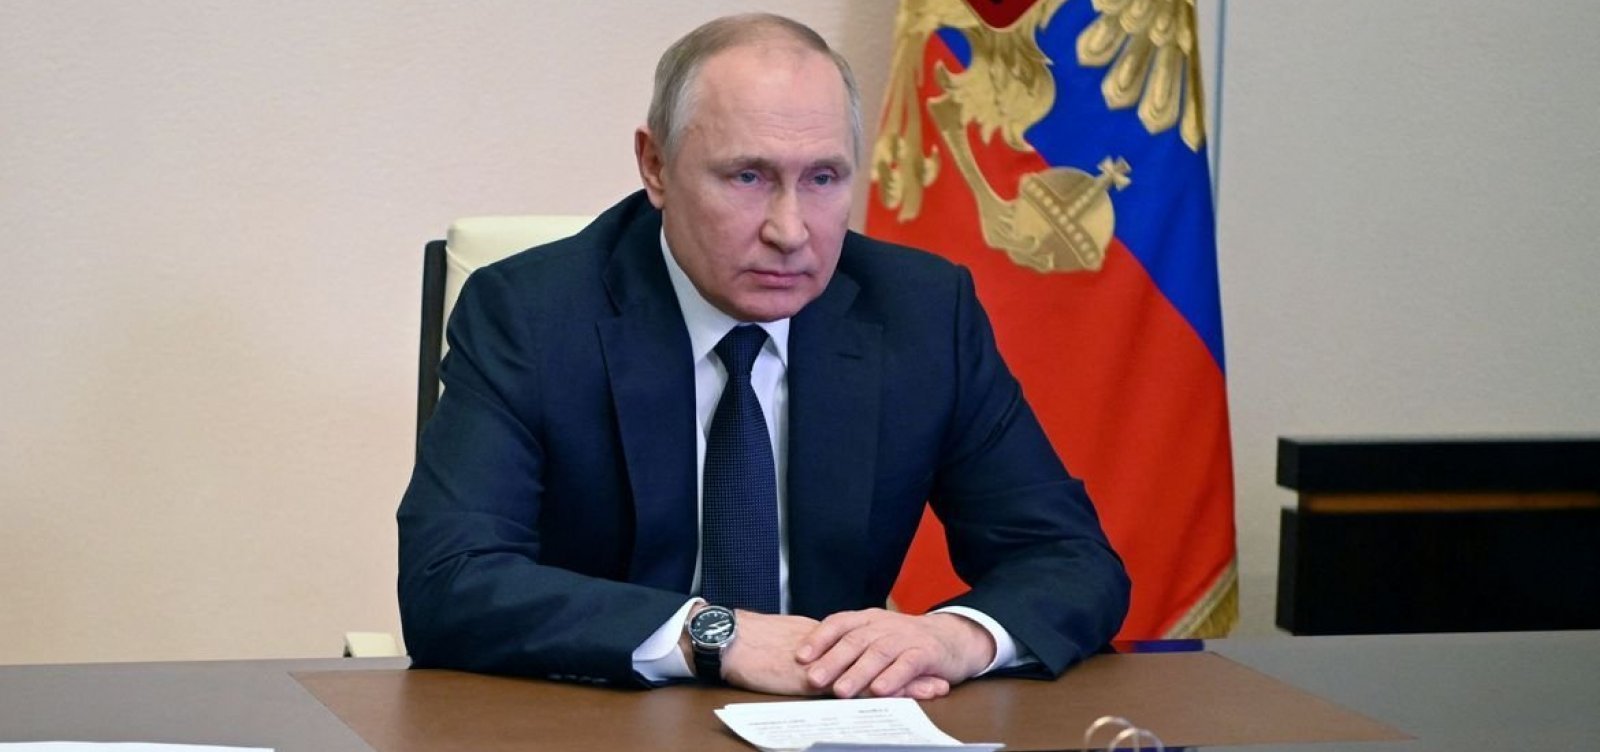 Putin ficou "calmo e tranquilo" com informe sobre Finlândia entrar na Otan